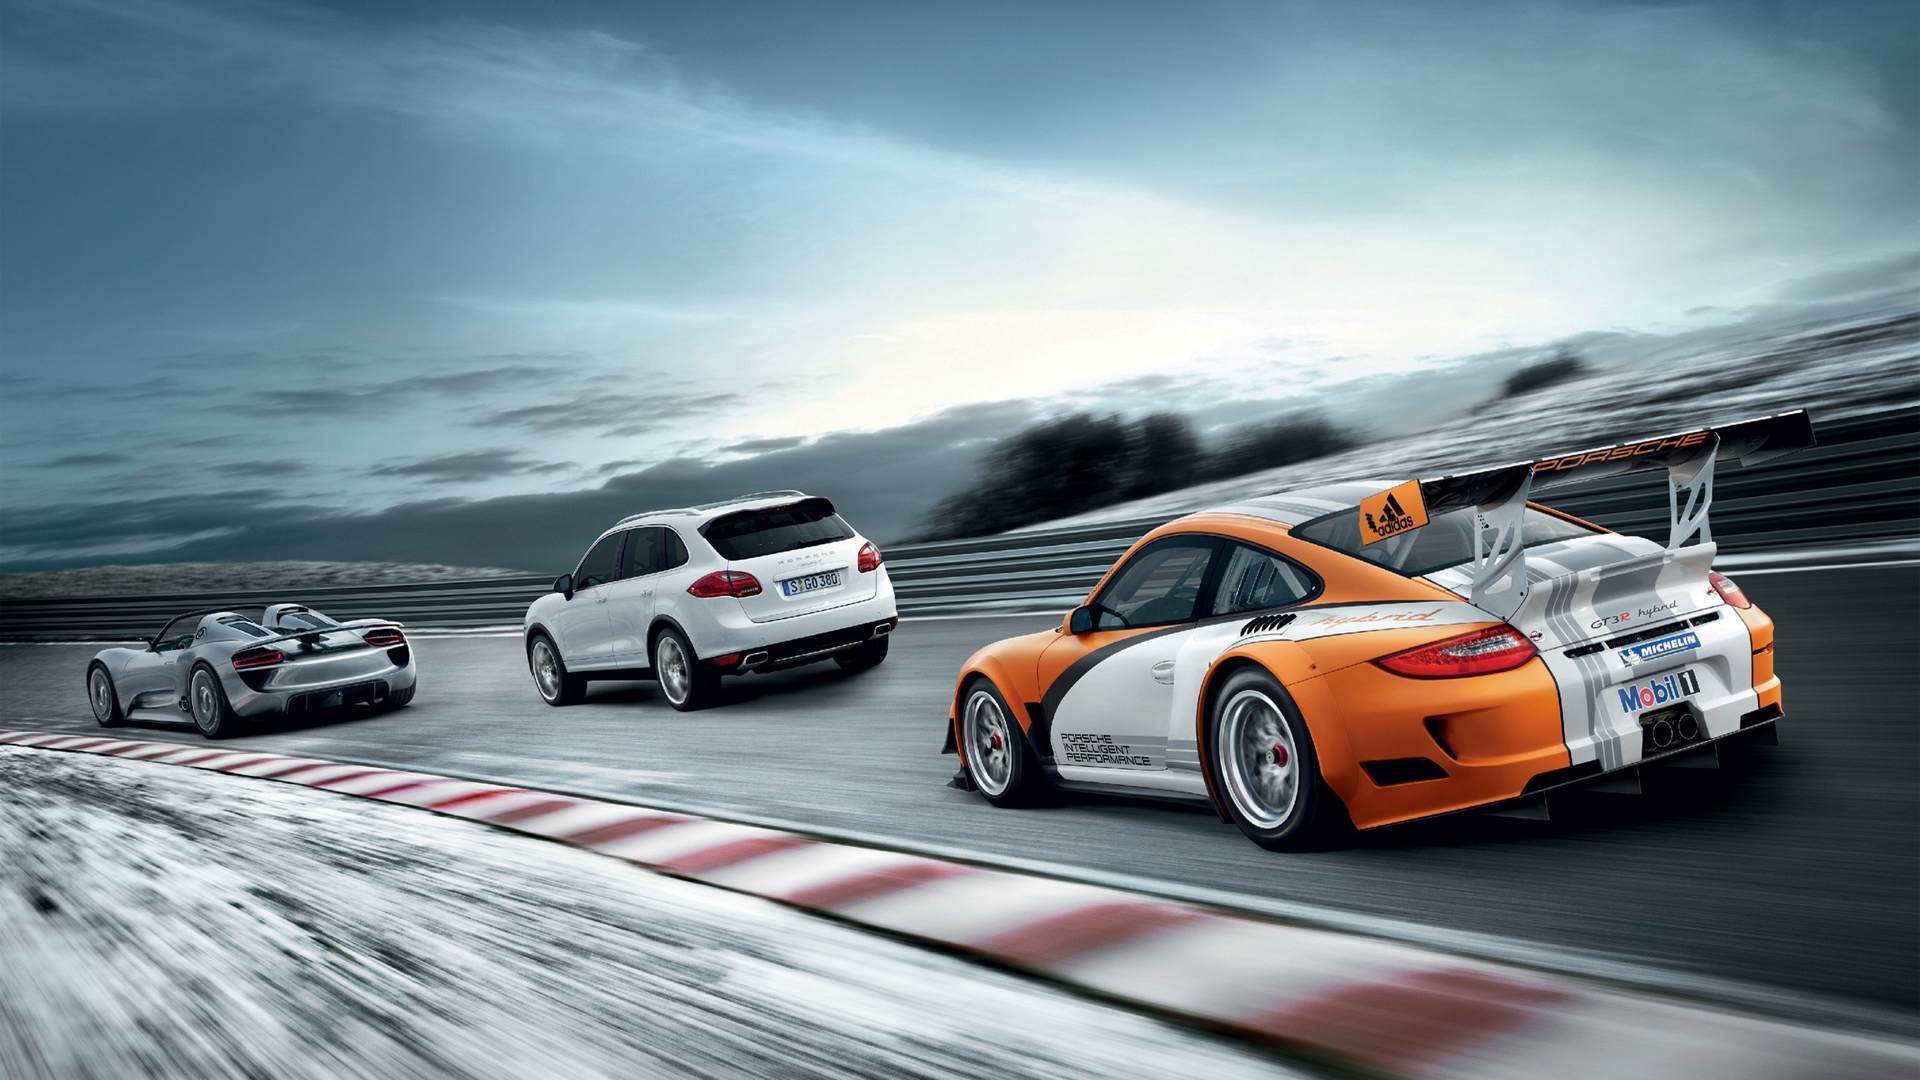 Descarga gratuita de fondo de pantalla para móvil de Porsche, Vehículos.